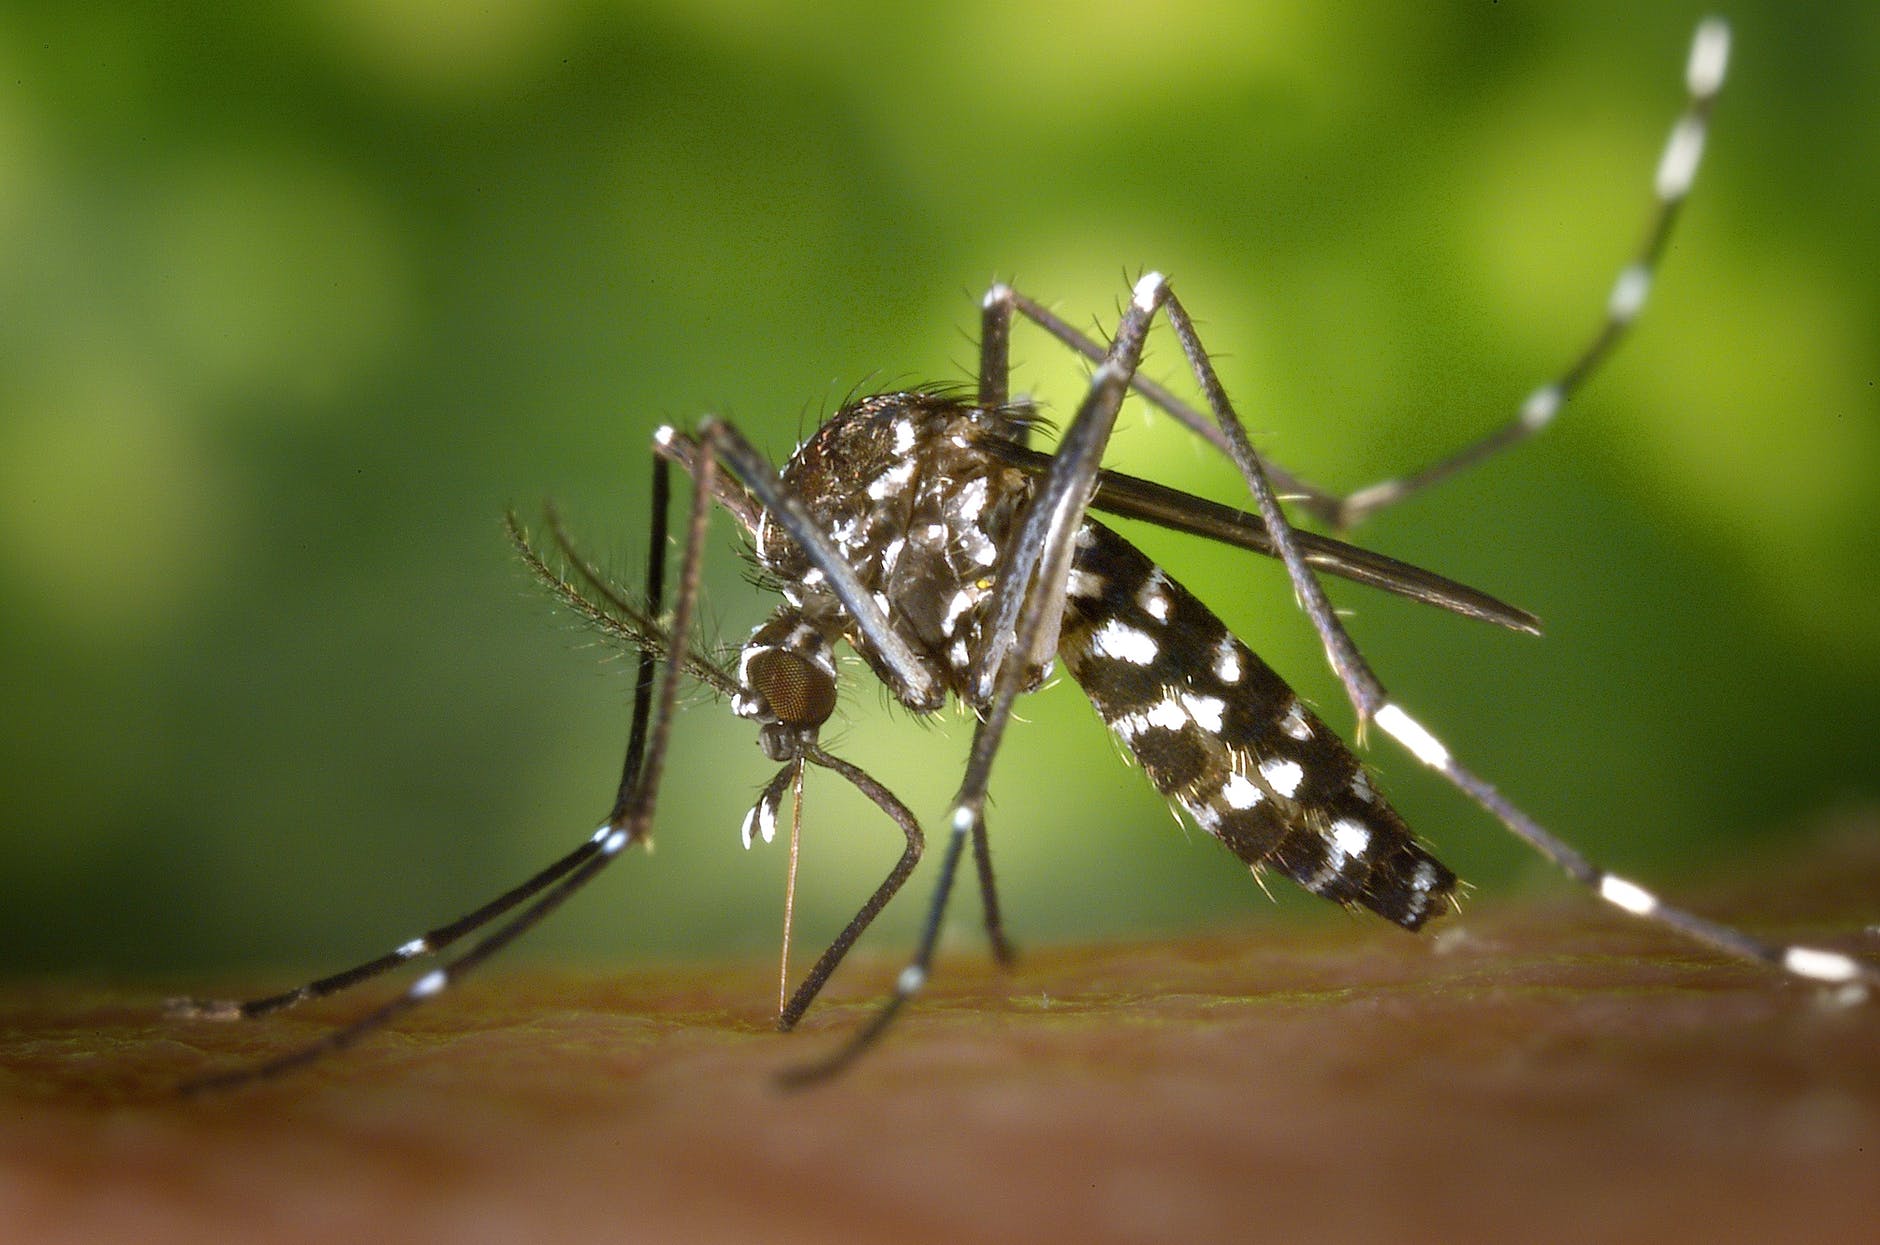 Salud urge a comunidades organizarse para eliminar criaderos del Aedes aegypti